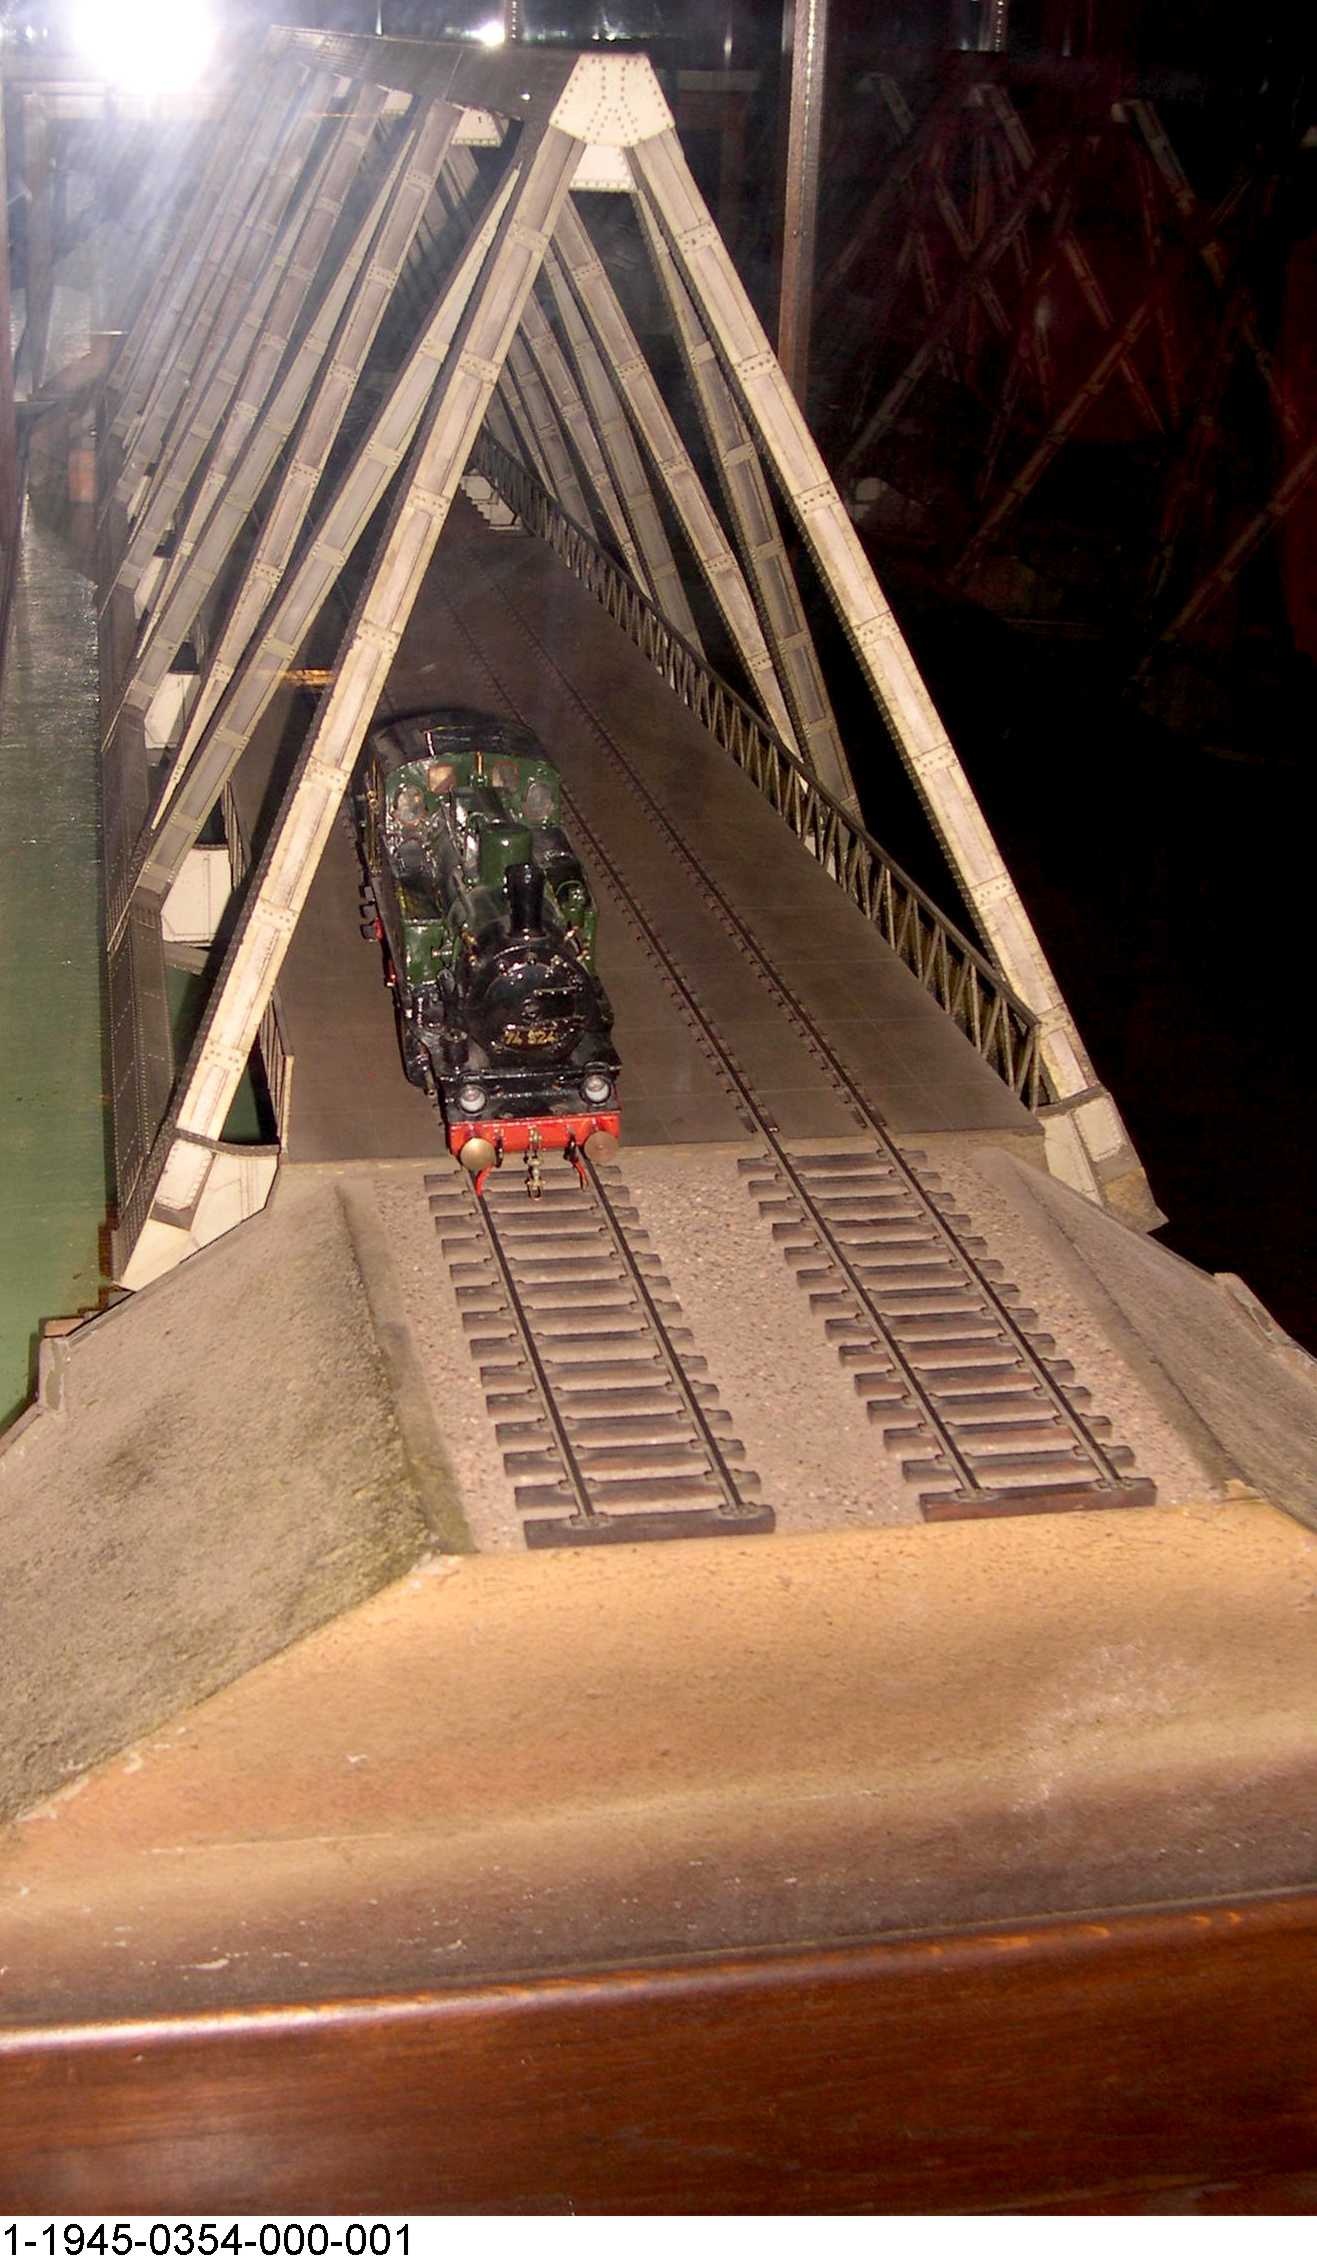 Dreigurtbrücke von 1930 über die Rur bei Düren, Modell 1:30 (Stiftung Deutsches Technikmuseum Berlin CC0)